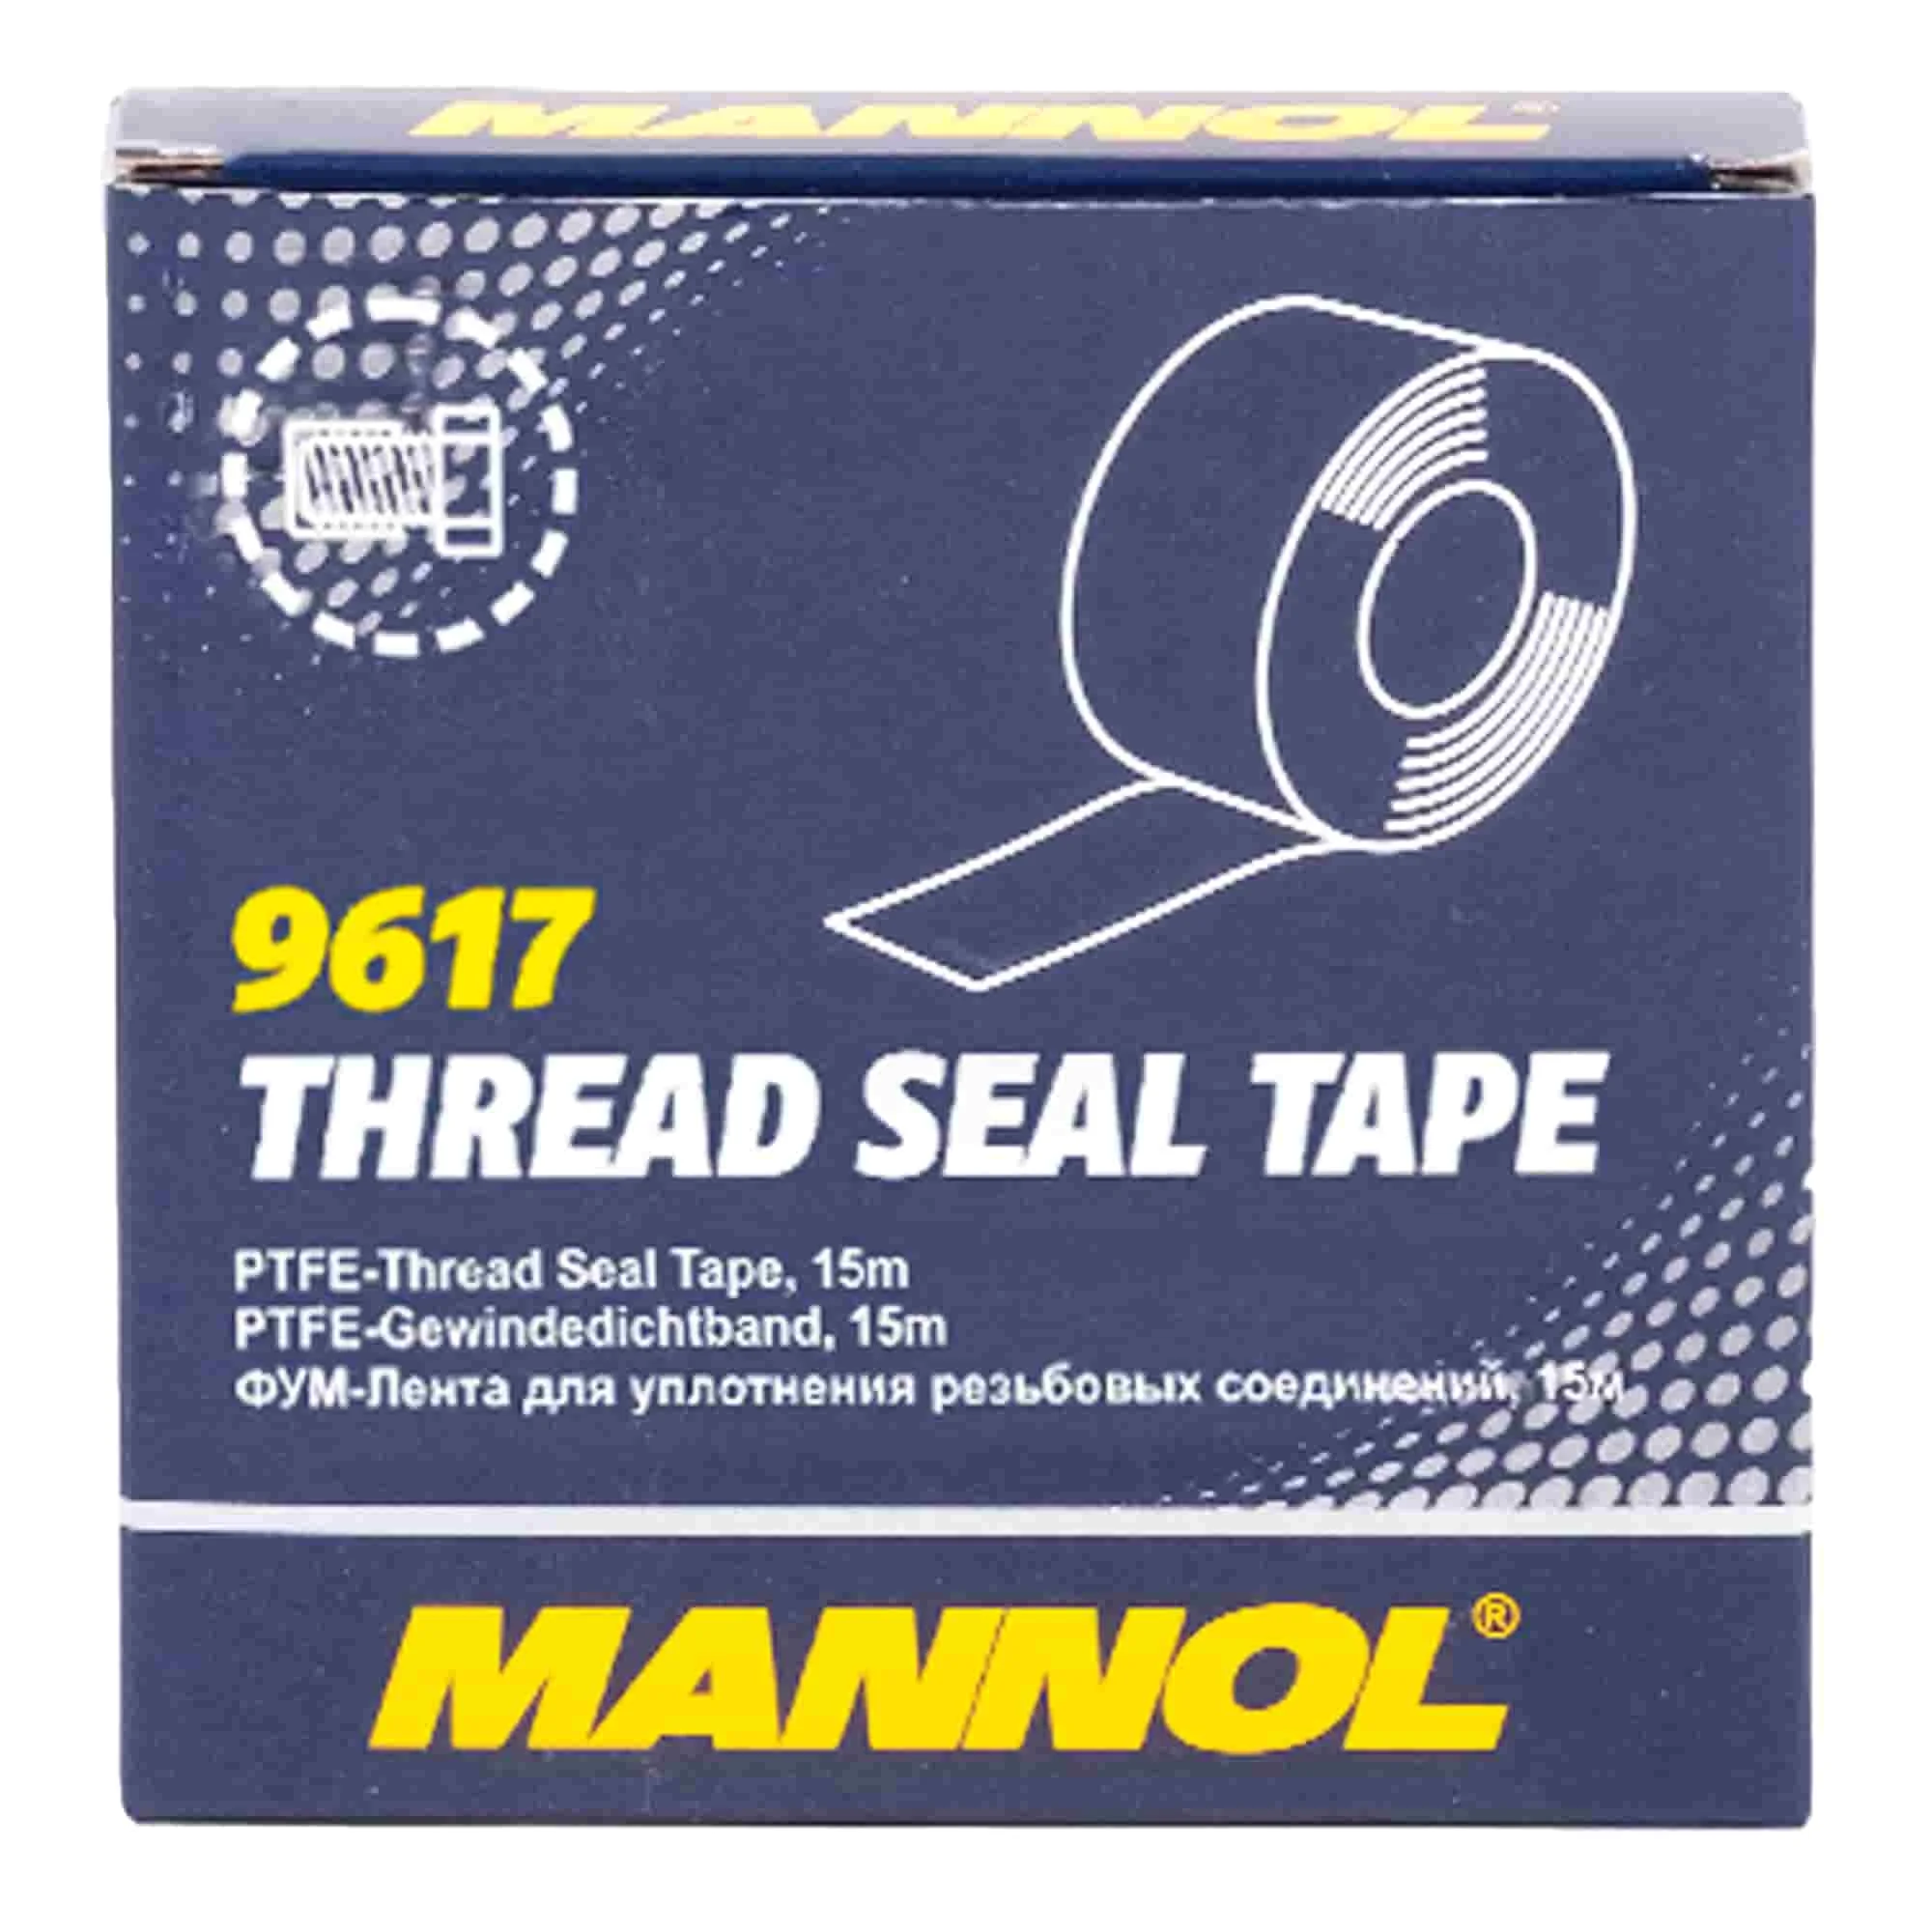 Универсальная фторопластовая лента MANNOL Thread Seal Tape 15м (9617)